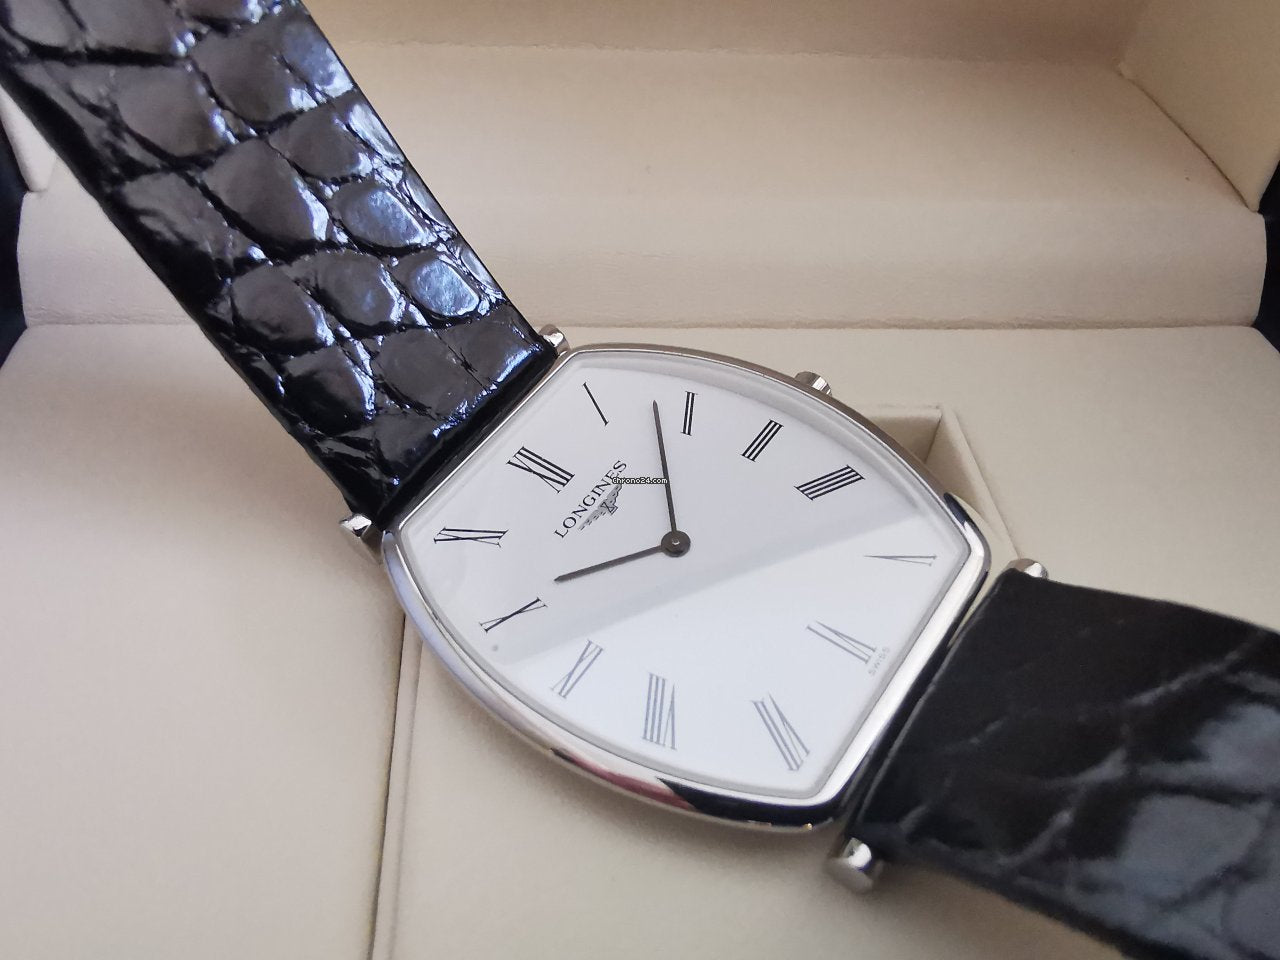 Longines La Grande Classique de Longines Tonneau White Dial Black Leather Strap Watch for Women - L4.205.4.12.2